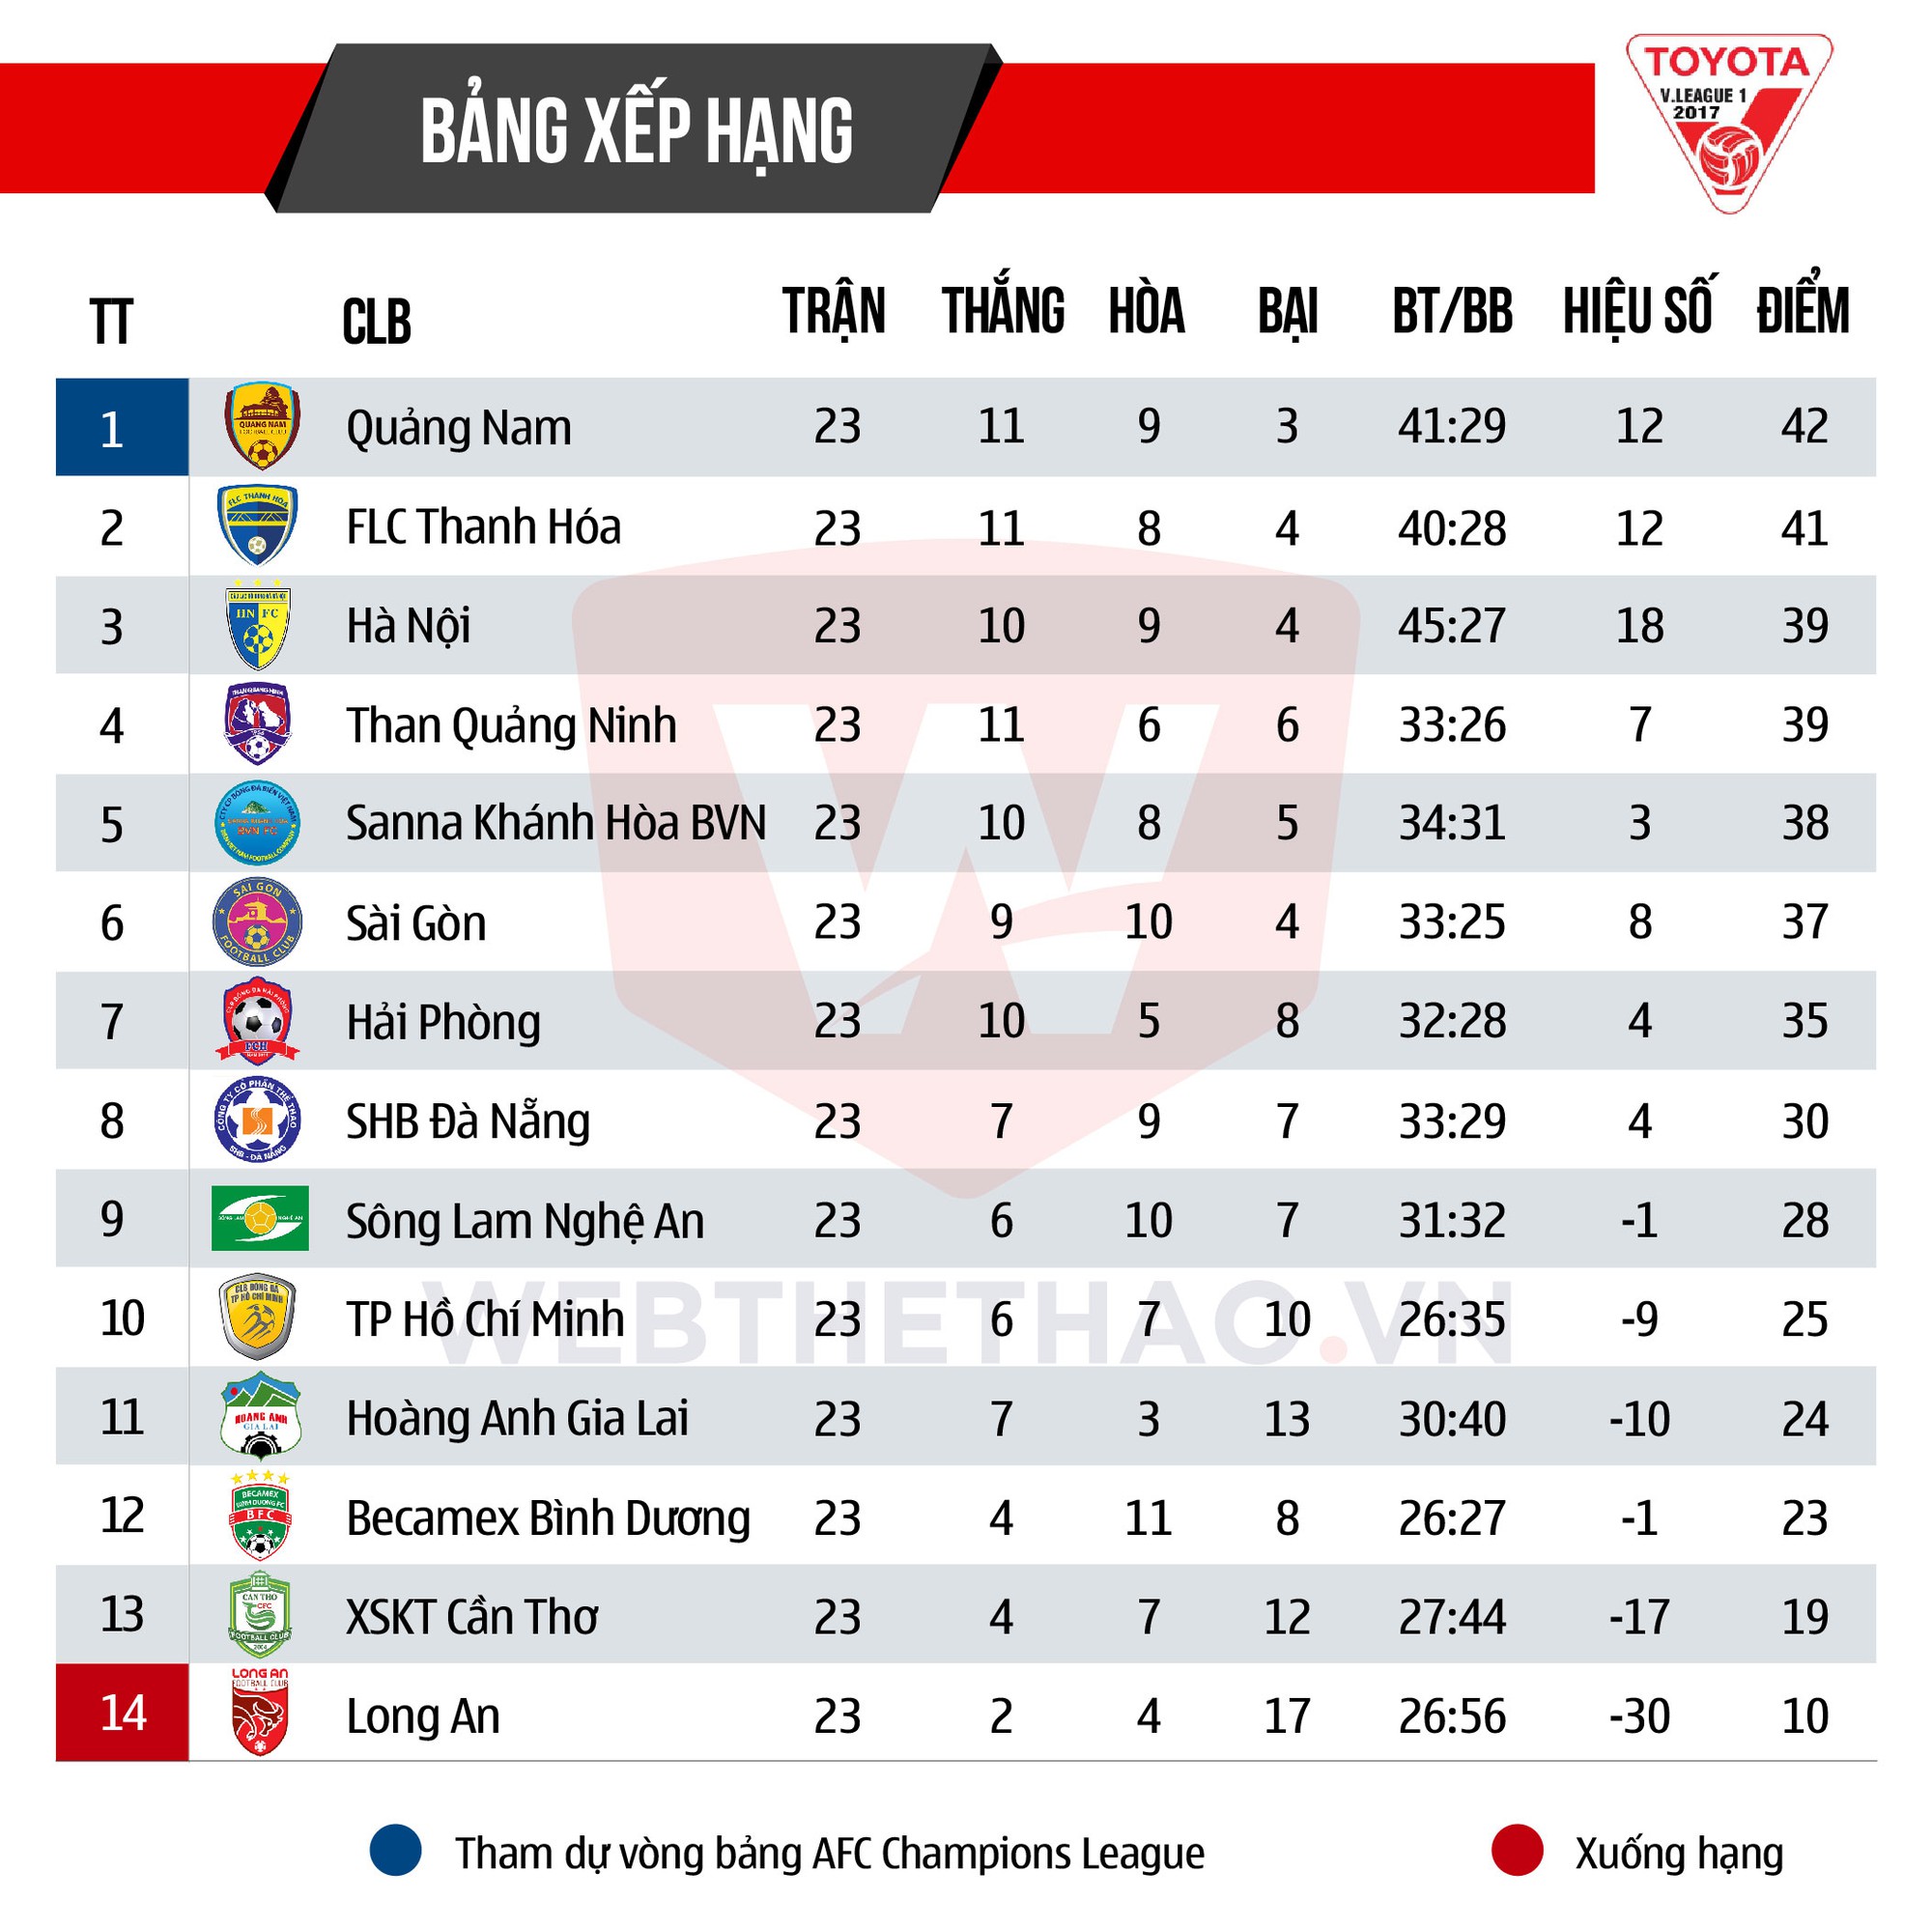 Bảng xếp hạng V-League 2017 trước vòng 24.